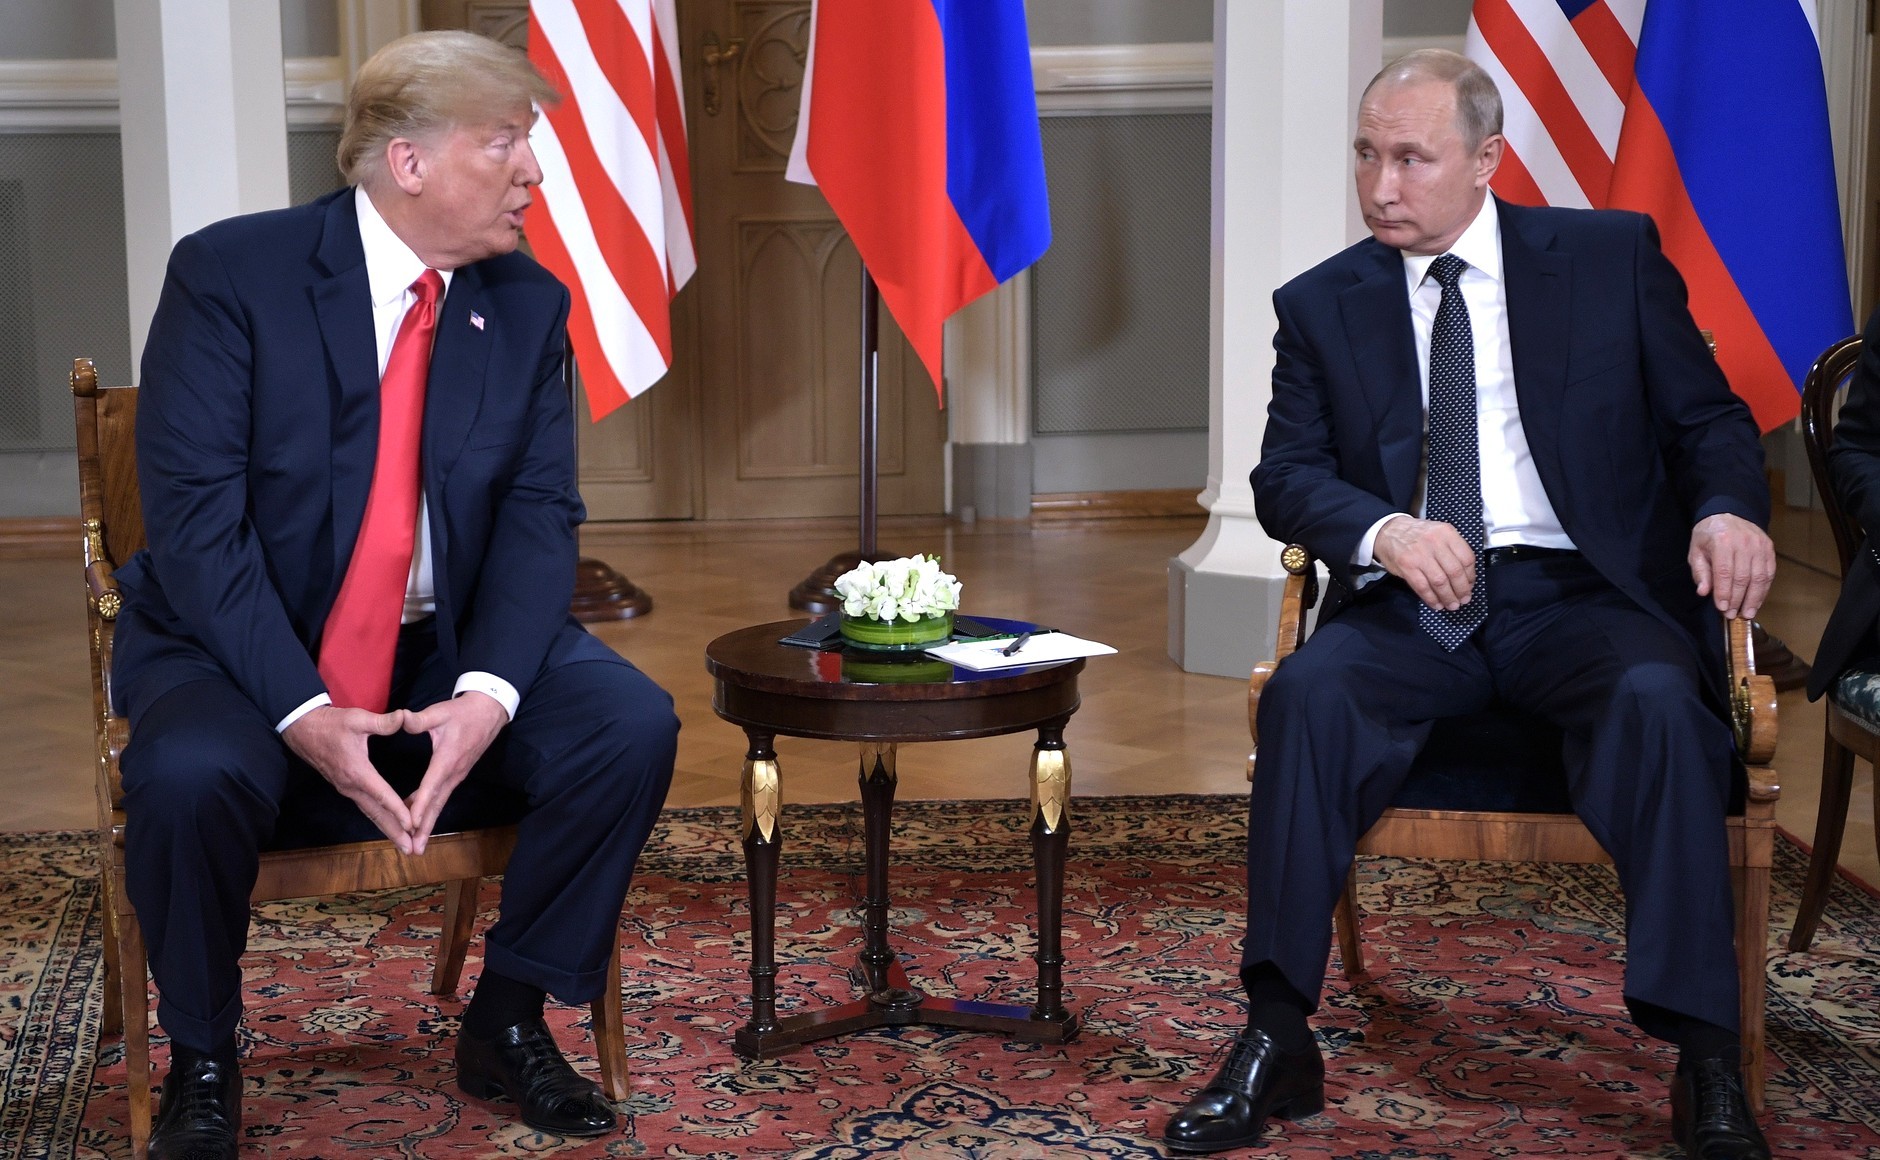 Трамп и Путин на саммите в Финляндии в 2018 году. Фото © kremlin.ru
